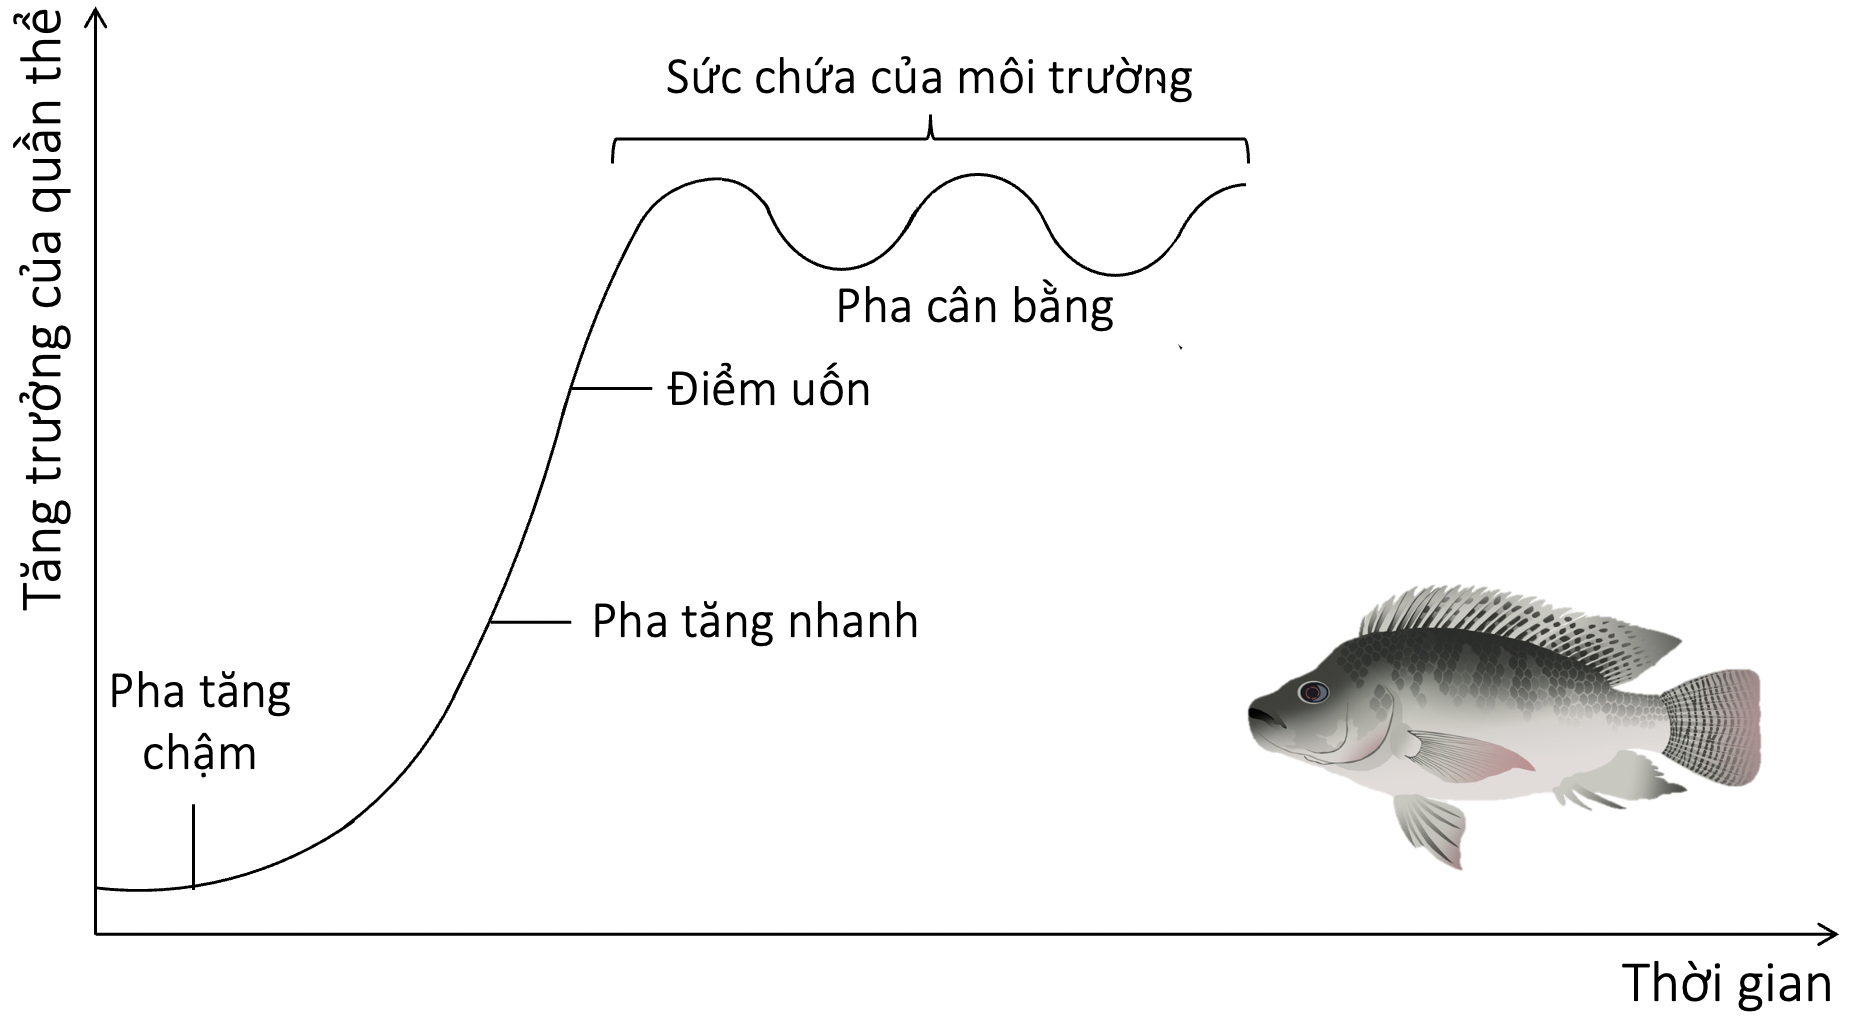 đồ thị thể hiện sự tăng trưởng kích thước của quần thể cá rô olm